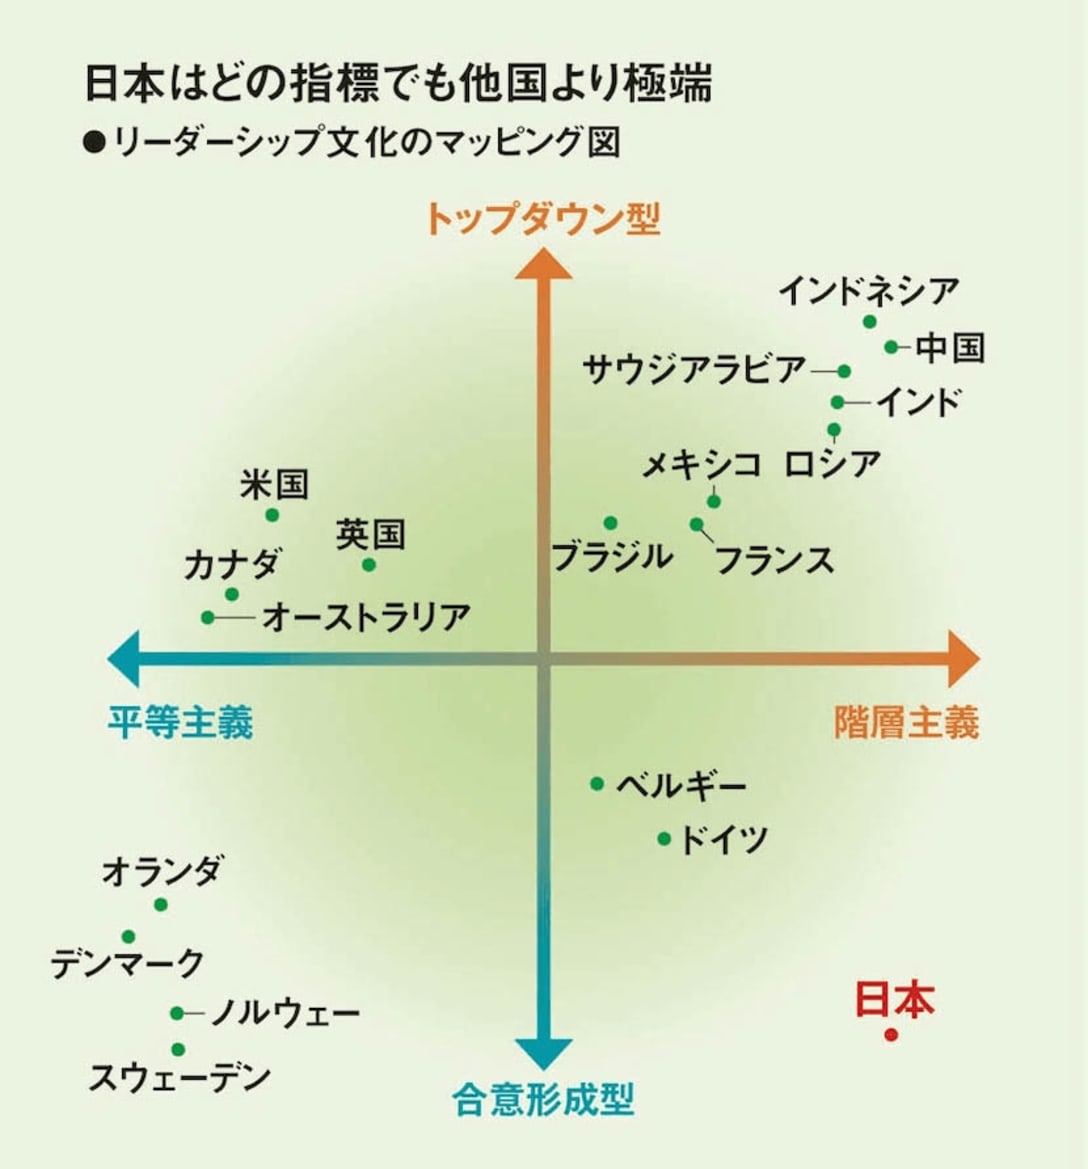 世界と比較しても、日本は合意形成を重んじていることが理解できる（画像参照元）